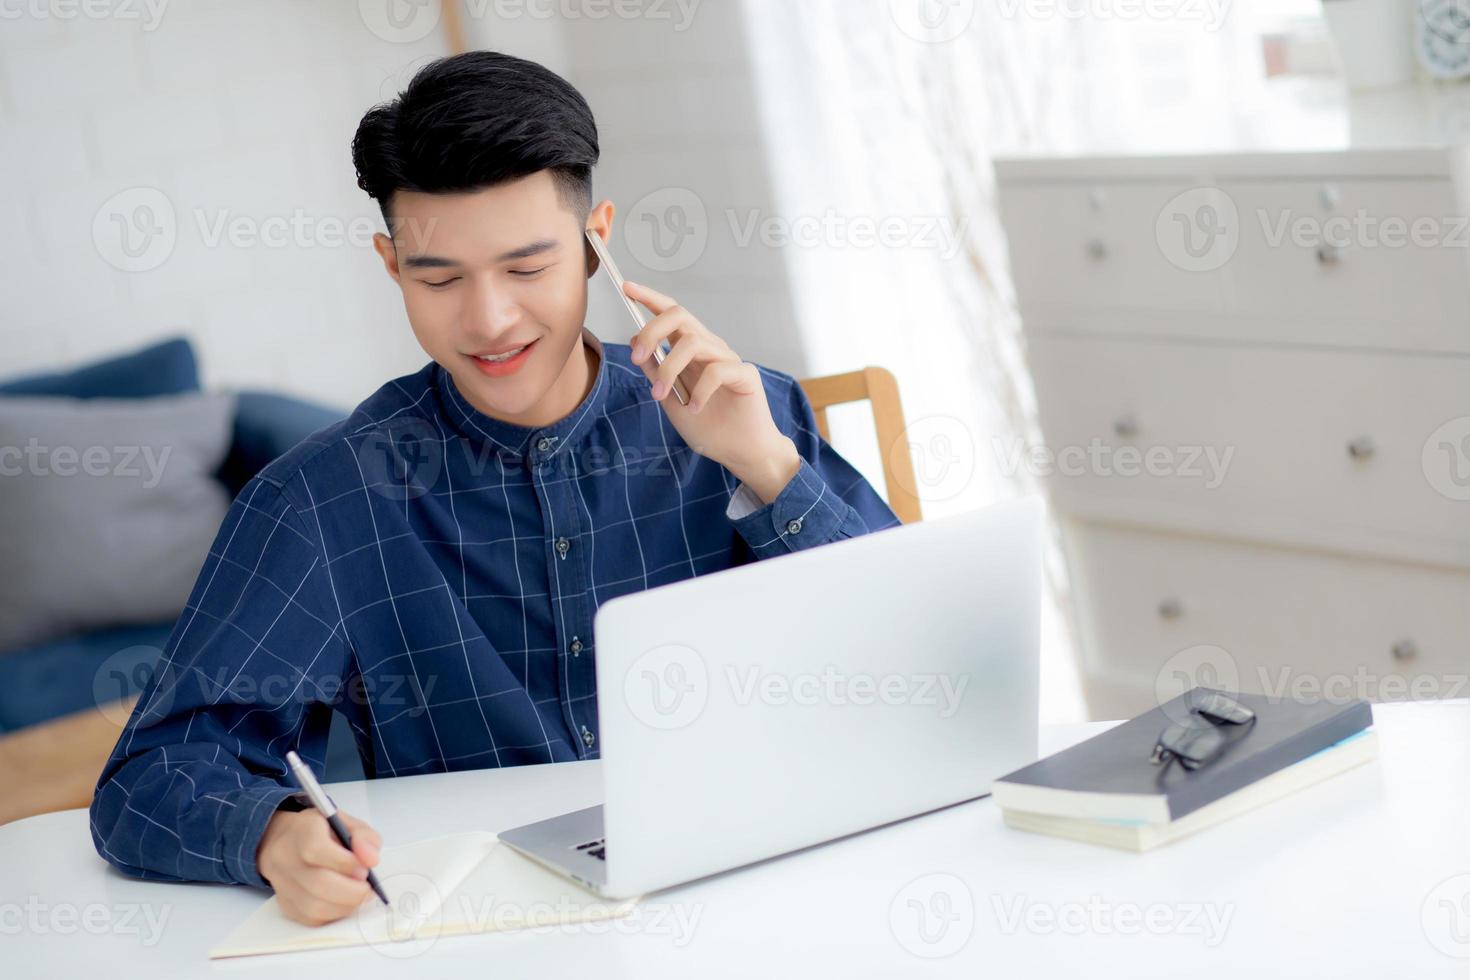 Hombre asiático joven que habla por teléfono y trabaja desde casa con una computadora portátil, un hombre independiente que escribe en un cuaderno y habla en un teléfono inteligente, se queda en casa, la vida doméstica, los negocios y el concepto de comunicación. foto